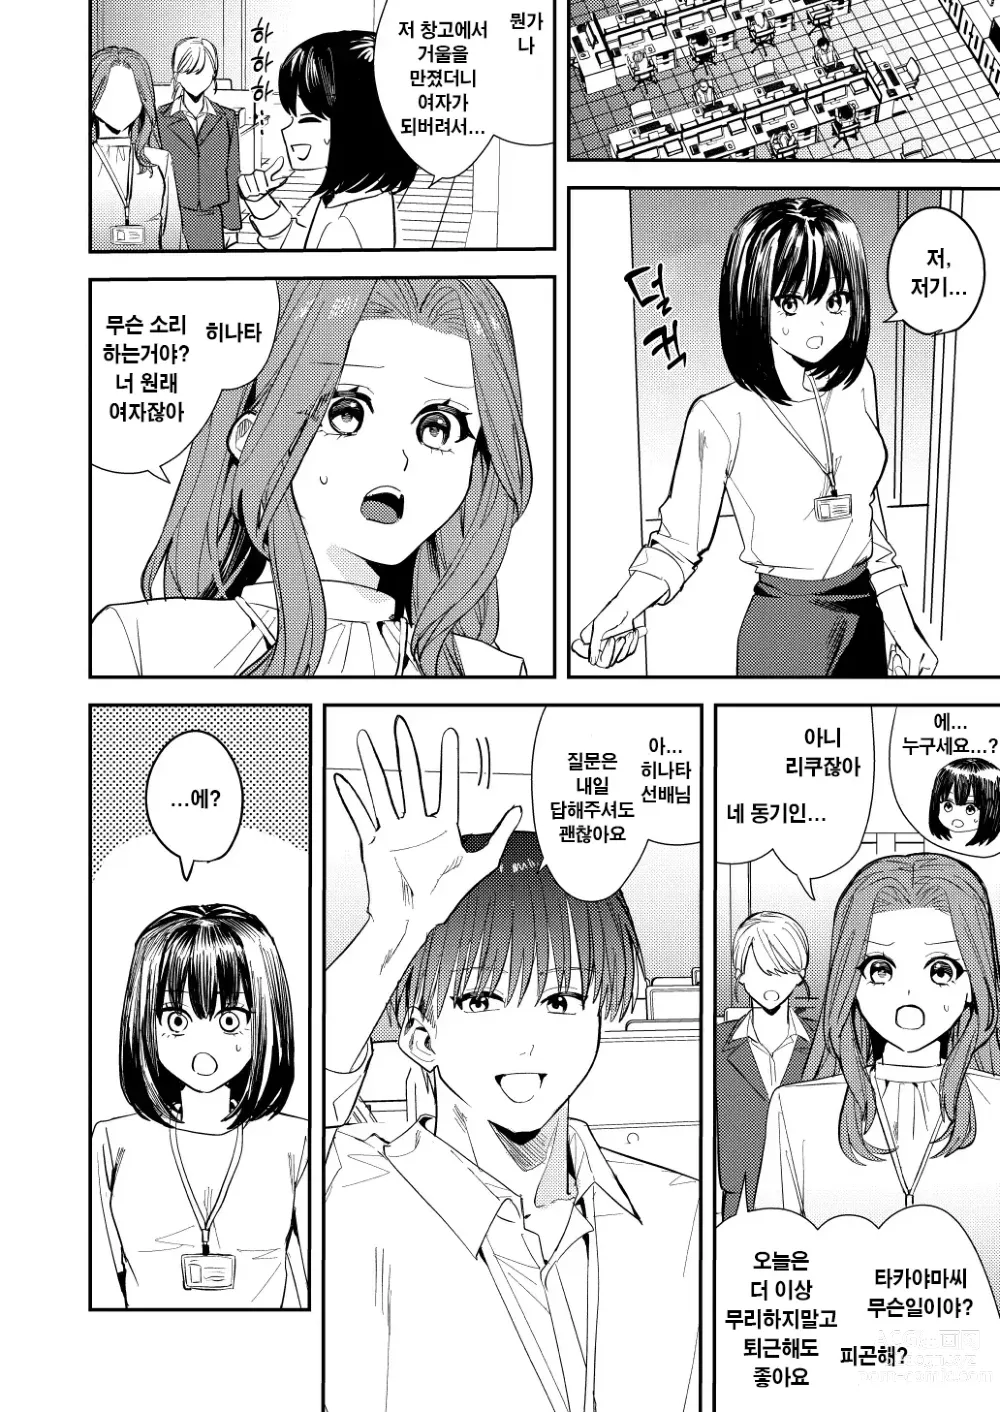 Page 9 of doujinshi 나는 거울의 나라에서 여자로 바뀐다 ~성별 반전 세계에서 여자의 쾌감을 탐하는 이야기~